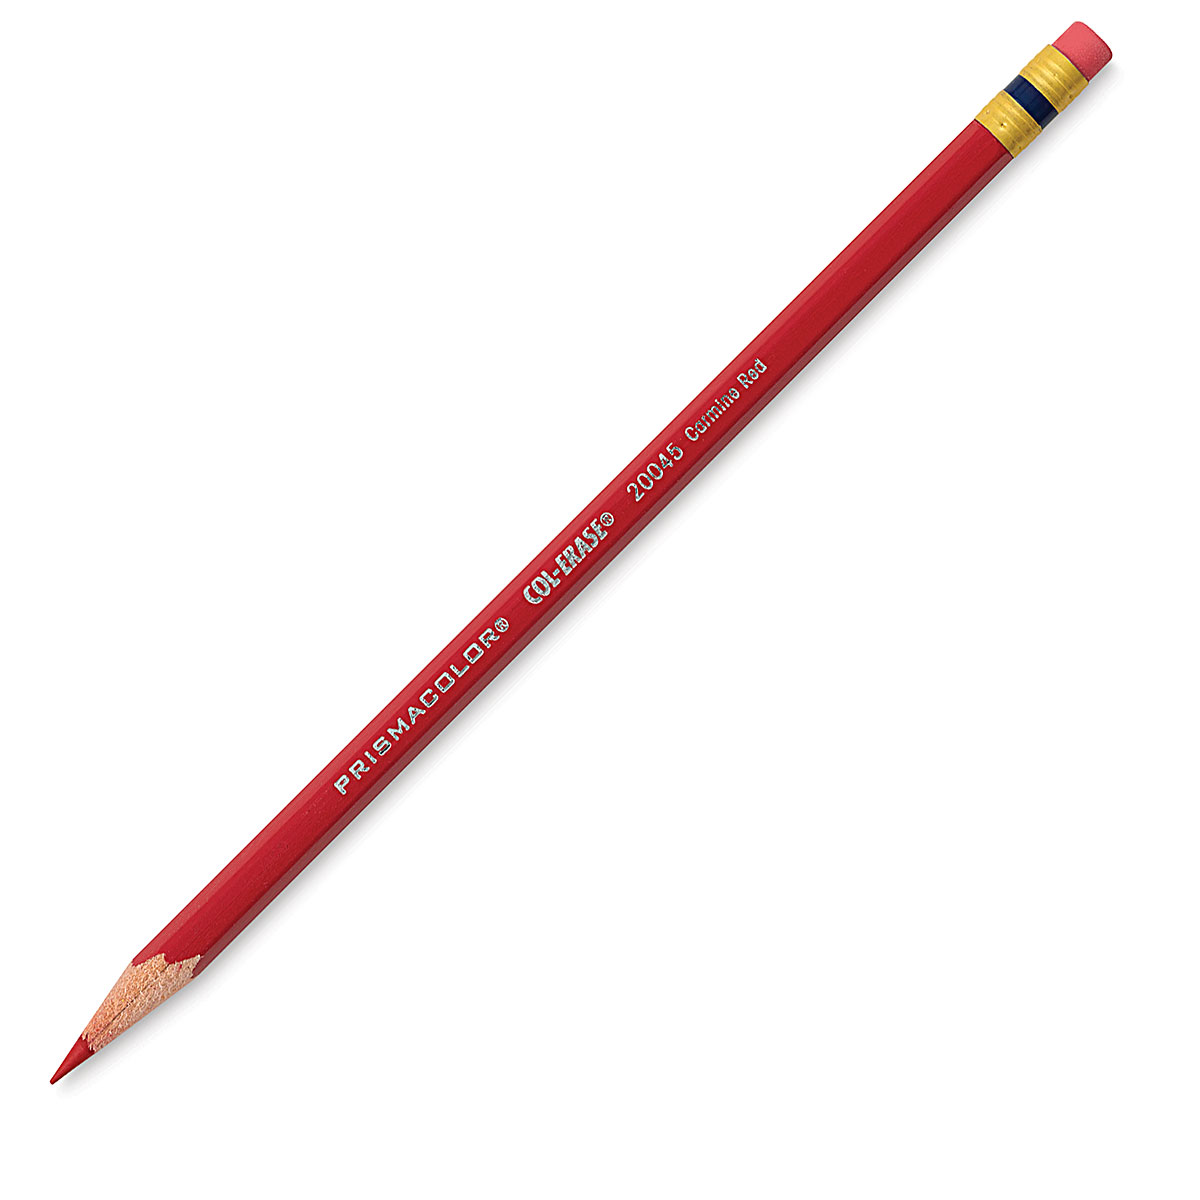 The Pencil Neck Geek: Venus Col-Erase Pencils